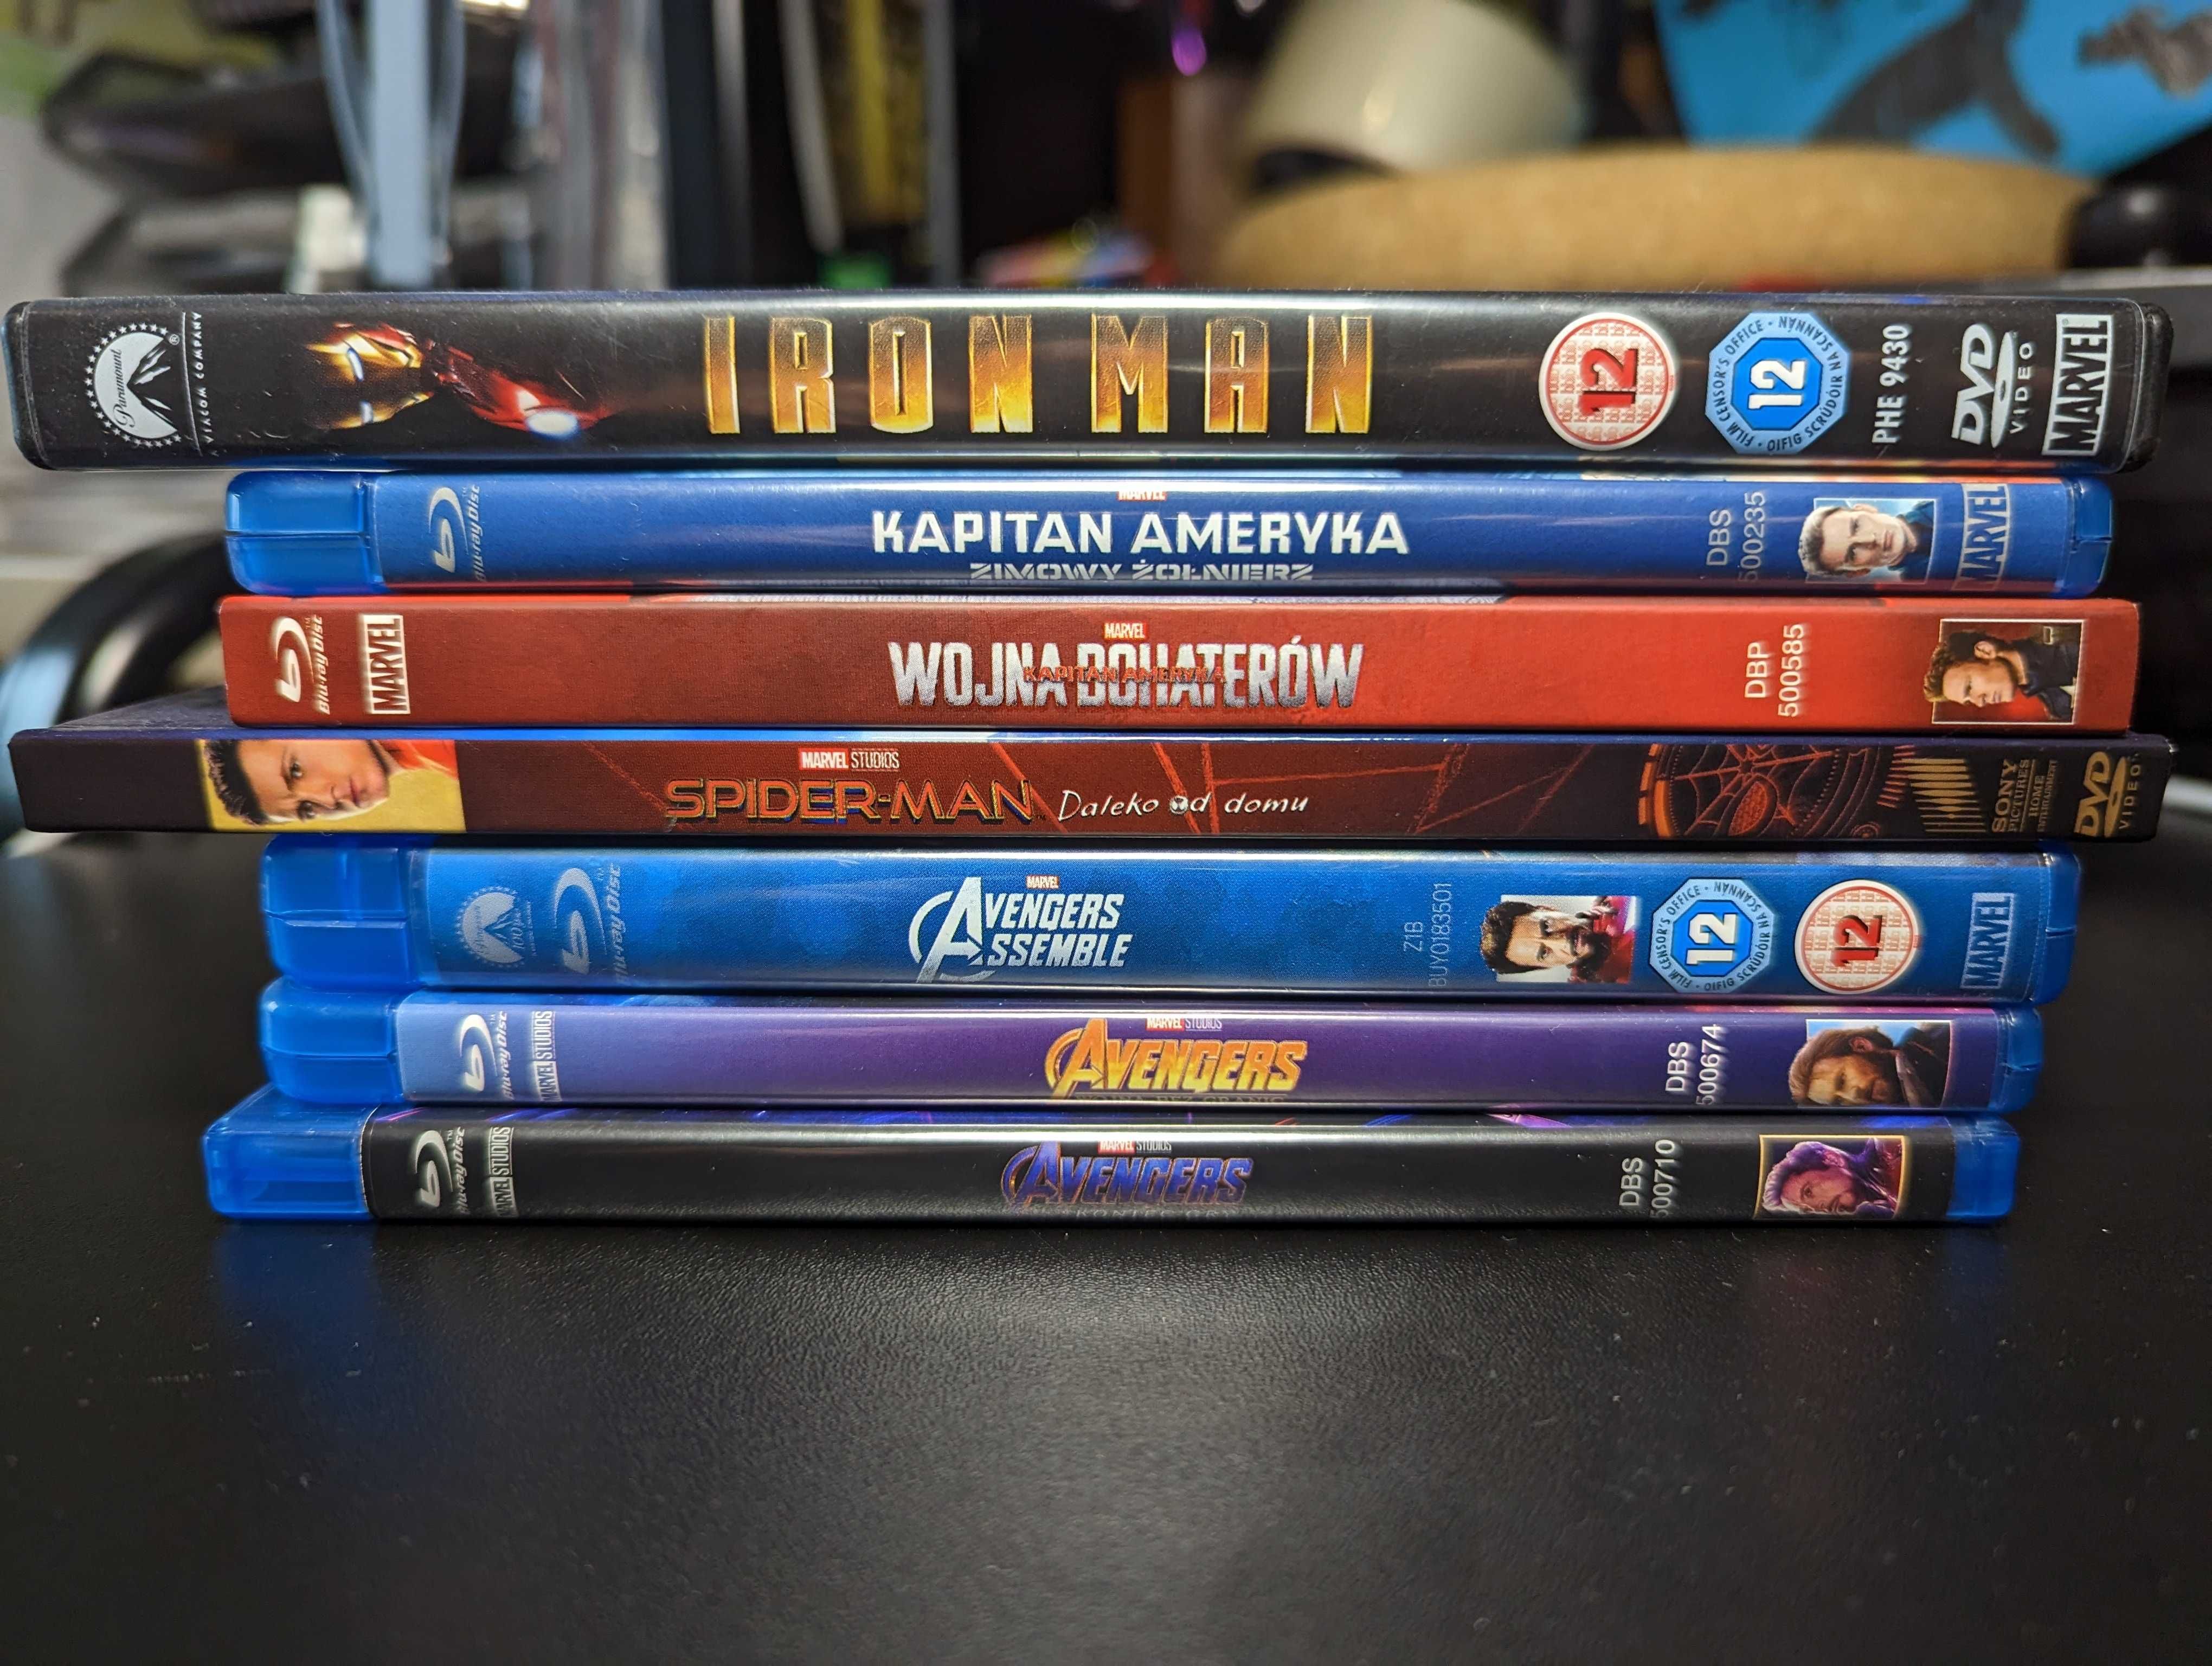 7 filmów Marvela (MCU) na Blu-Ray i DVD